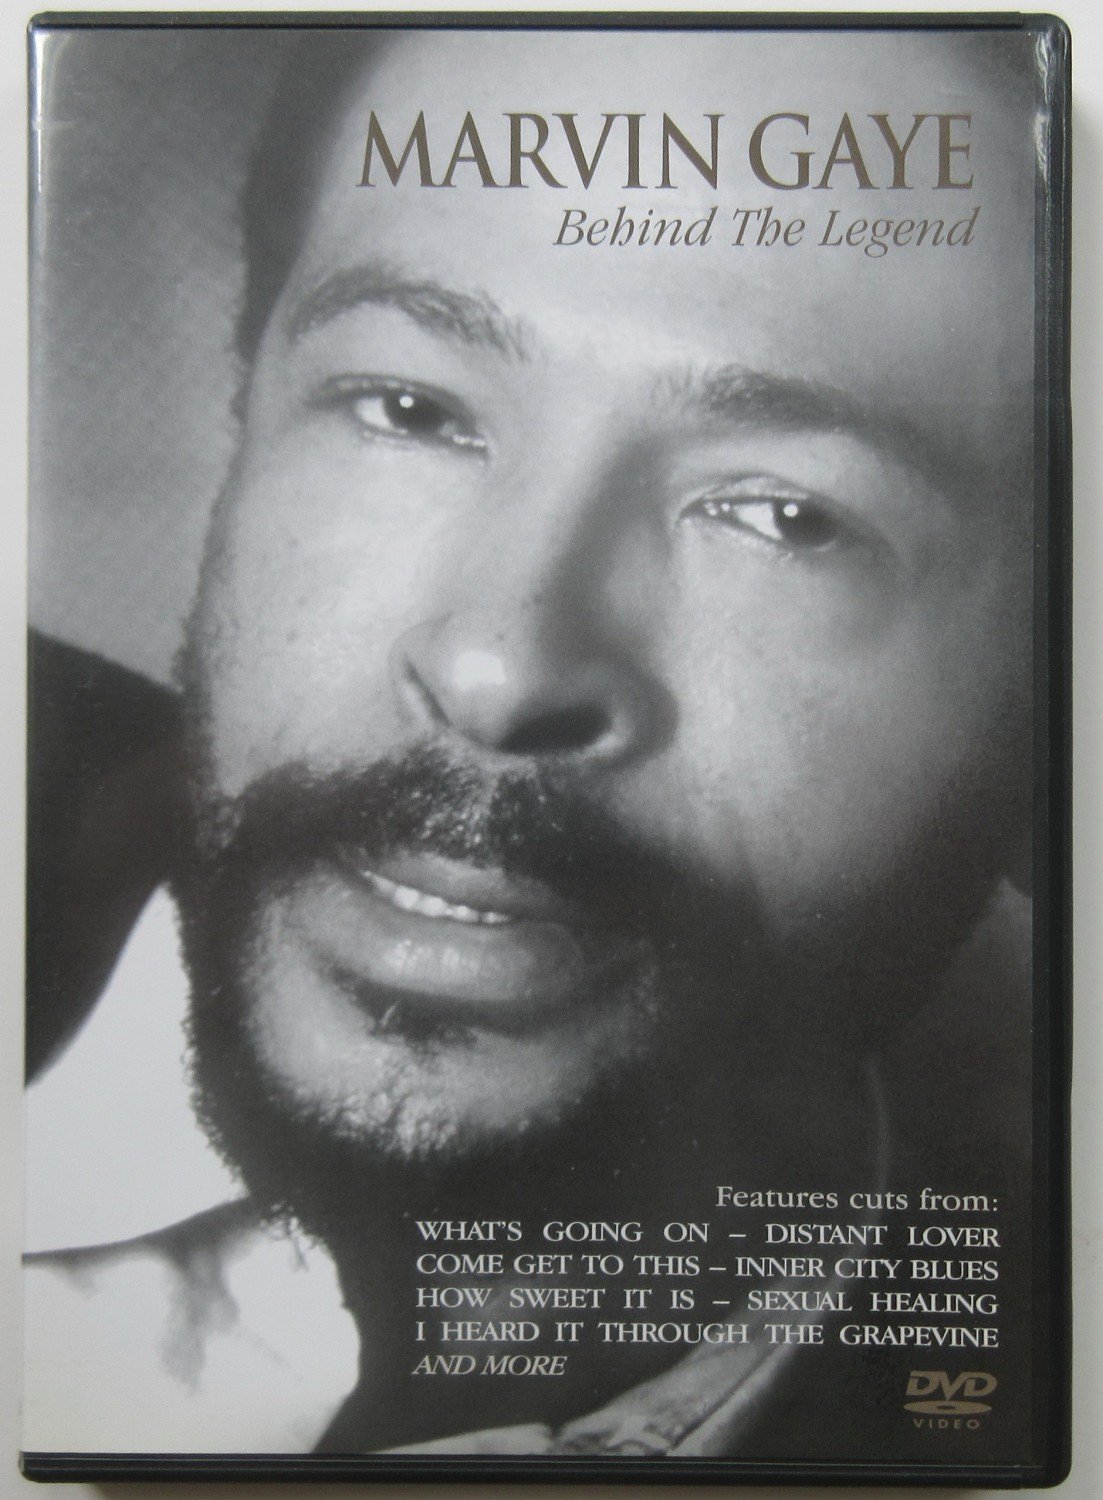 Behind The Legend“ (Marvin Gaye) – Film gebraucht kaufen – A02gTjRg11ZZP